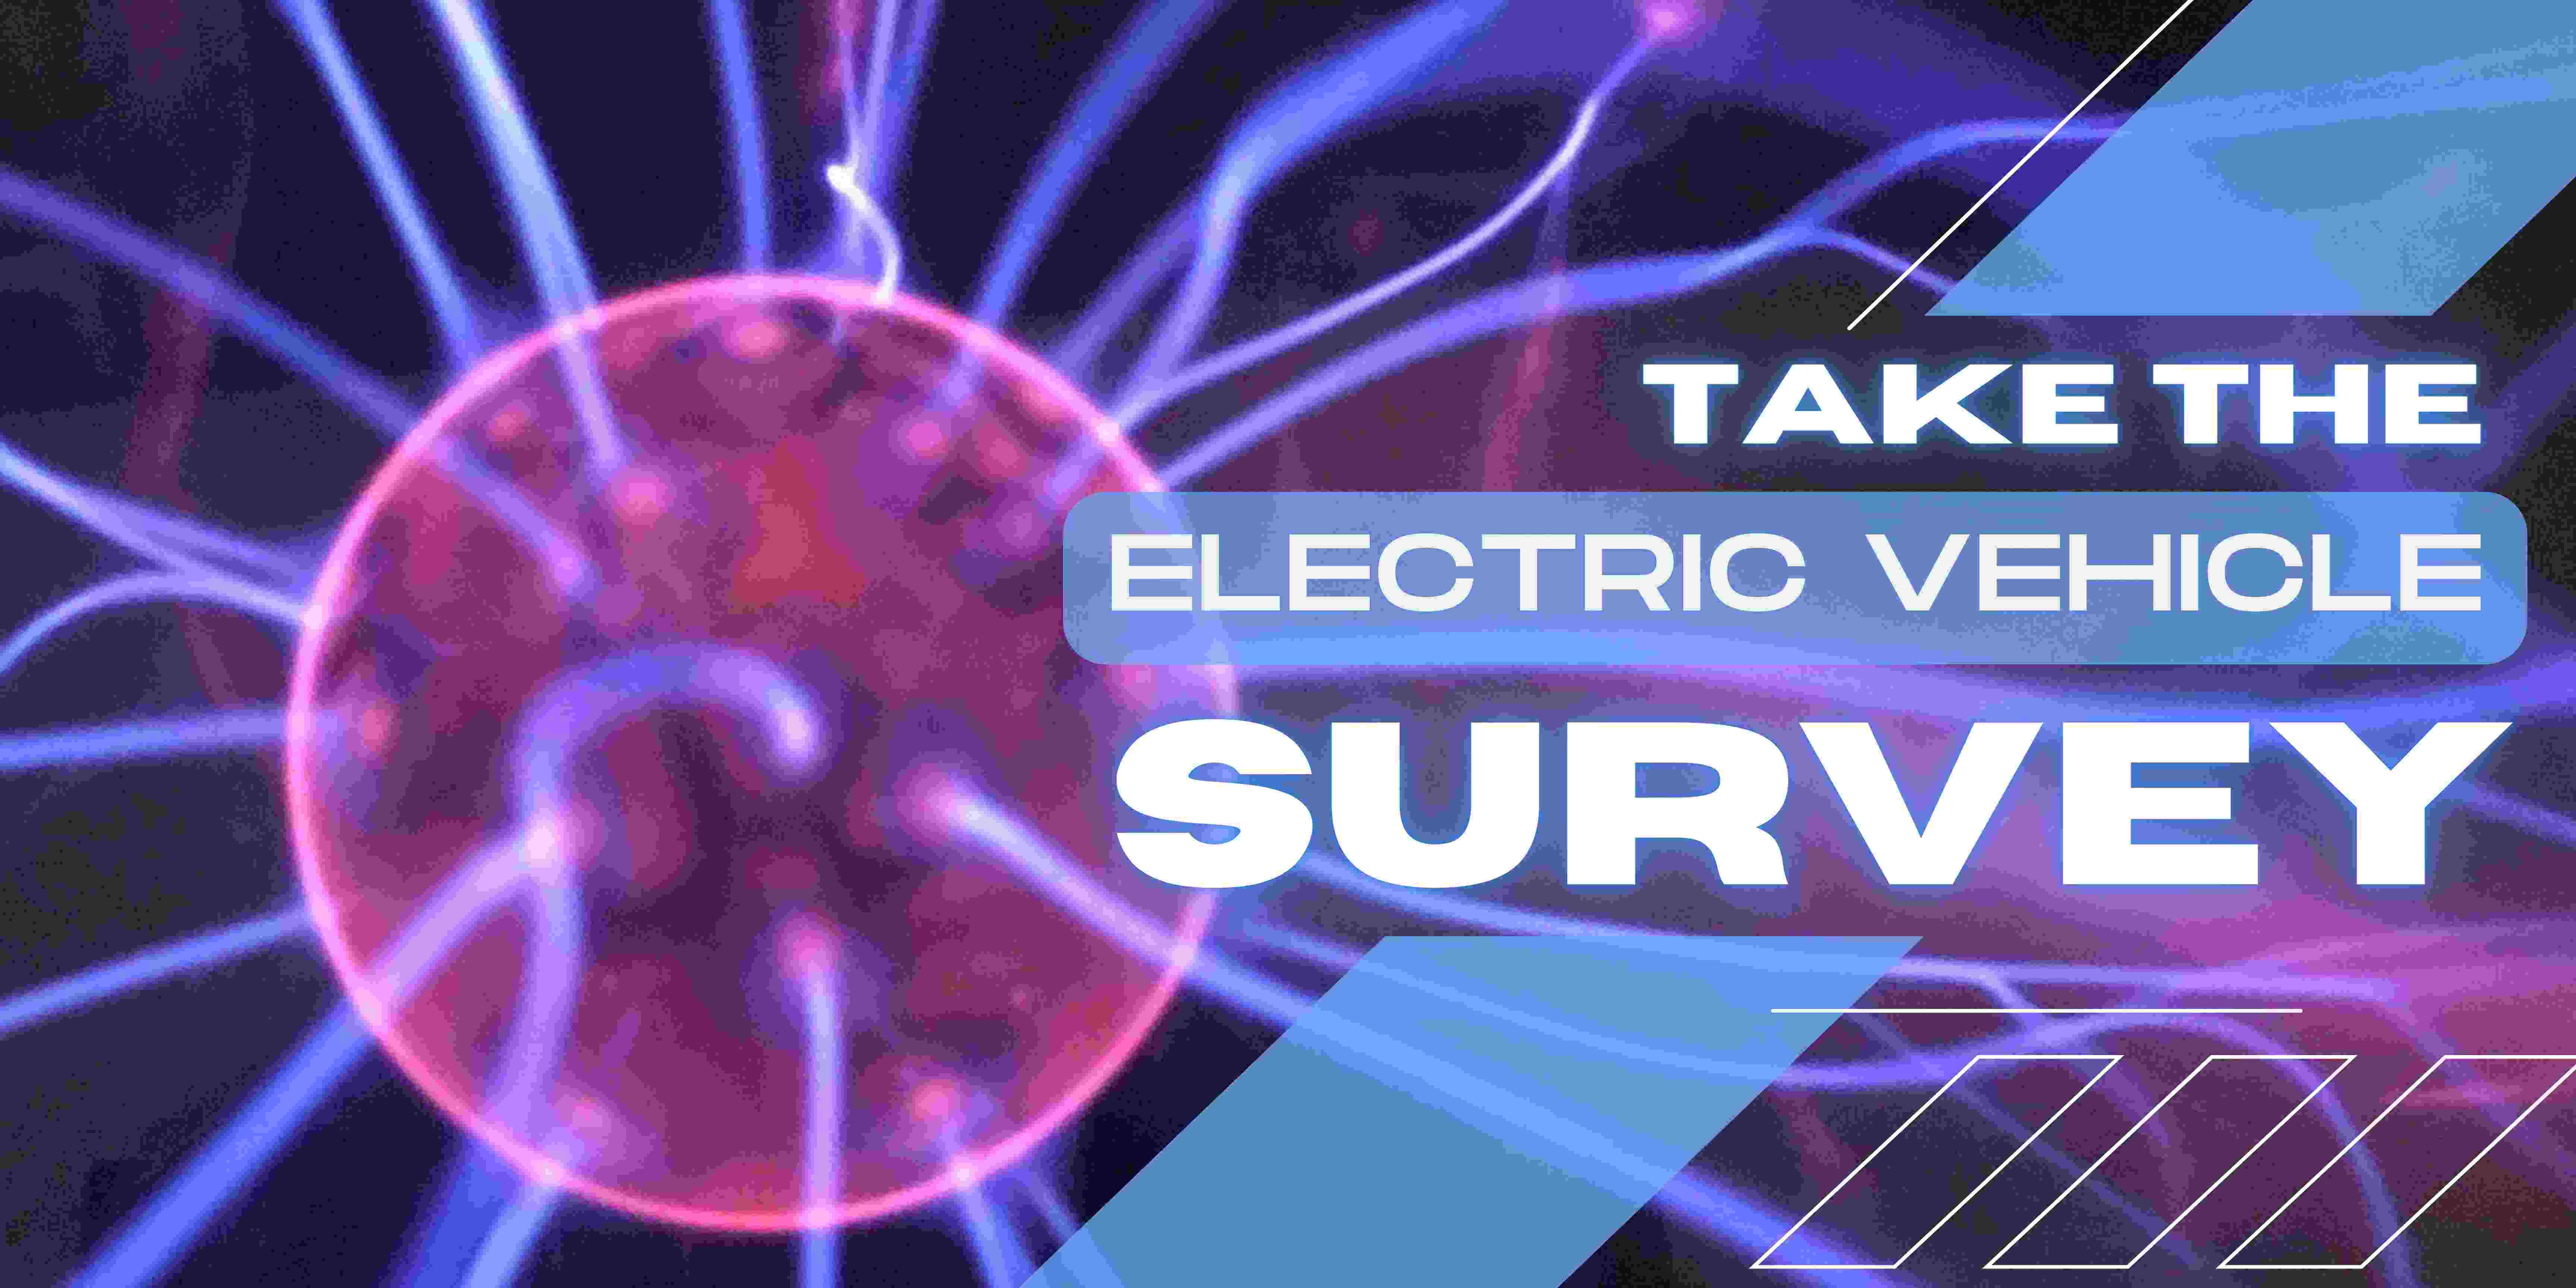 Take the E.V. Survey